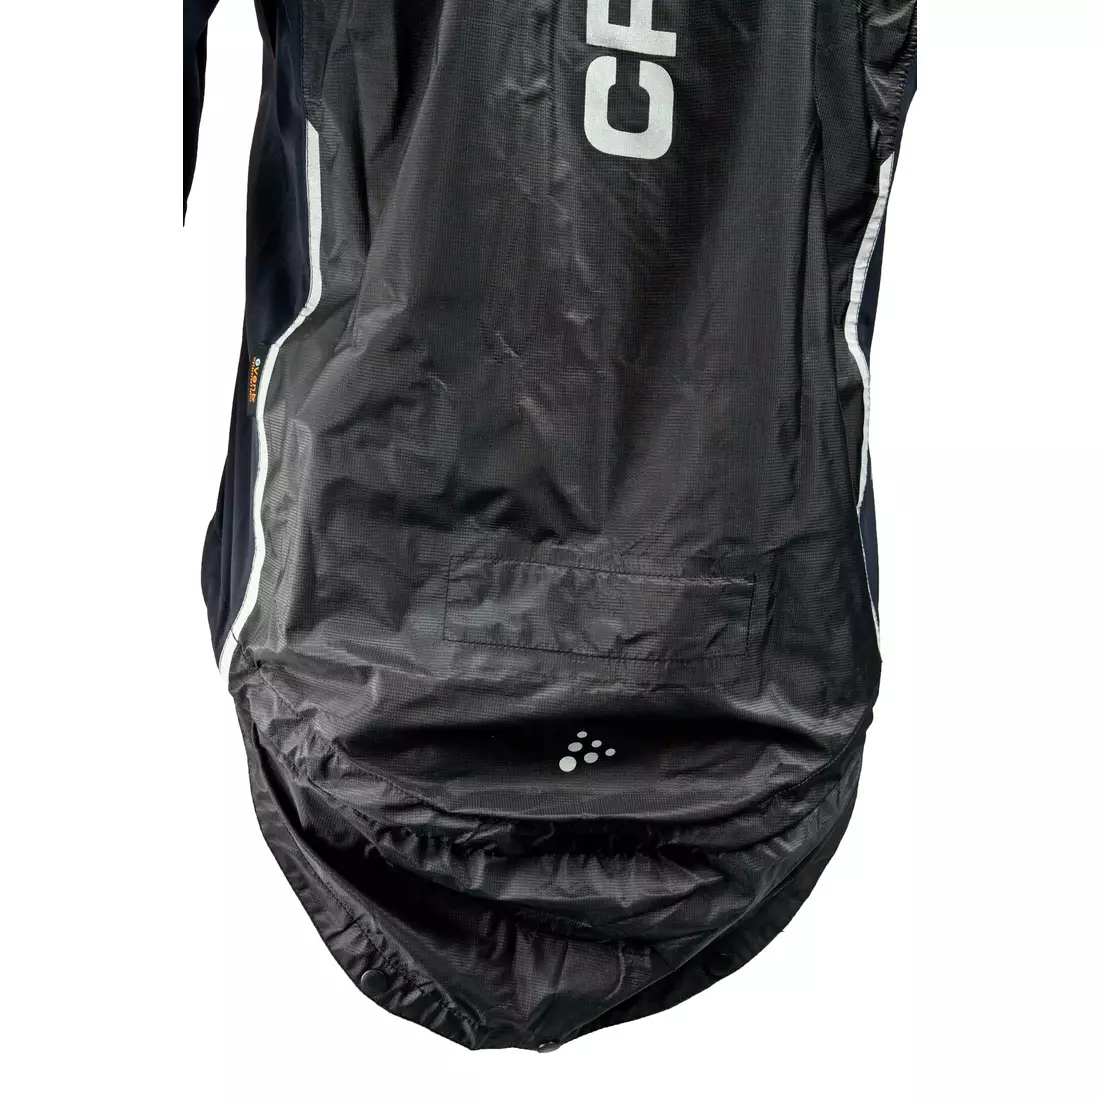 CRAFT ELITE BIKE - esőálló férfi kerékpáros kabát 1902576-9900, szín: fekete